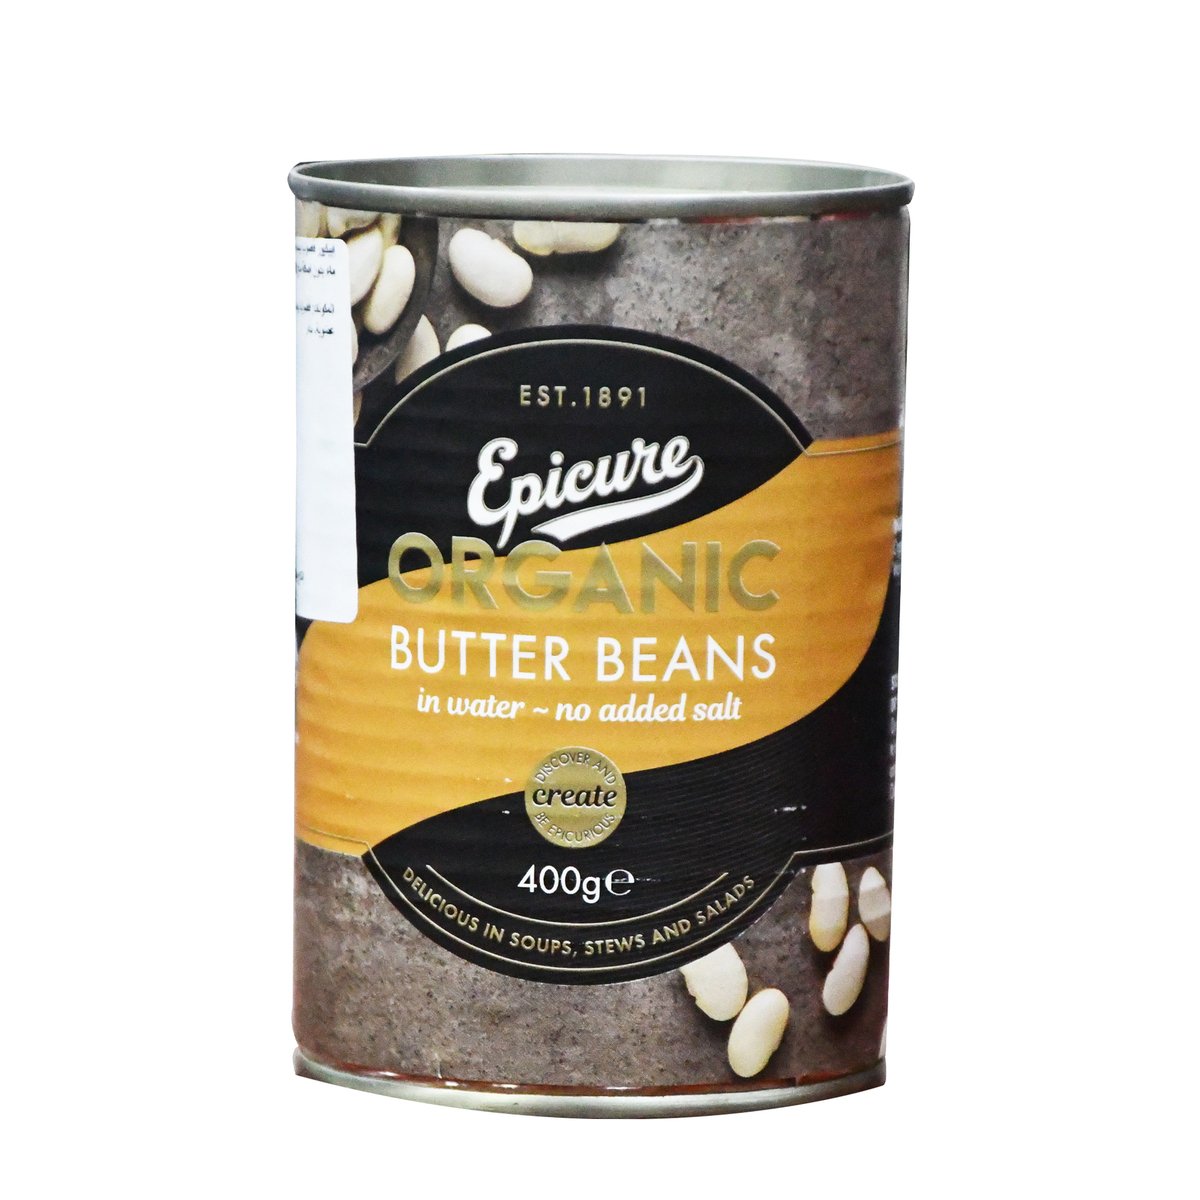 اشتري قم بشراء ايبيكيور فول الزبدة في الماء العضوي بدن محل مضاف 400 جم Online at Best Price من الموقع - من لولو هايبر ماركت Canned Beans في الامارات